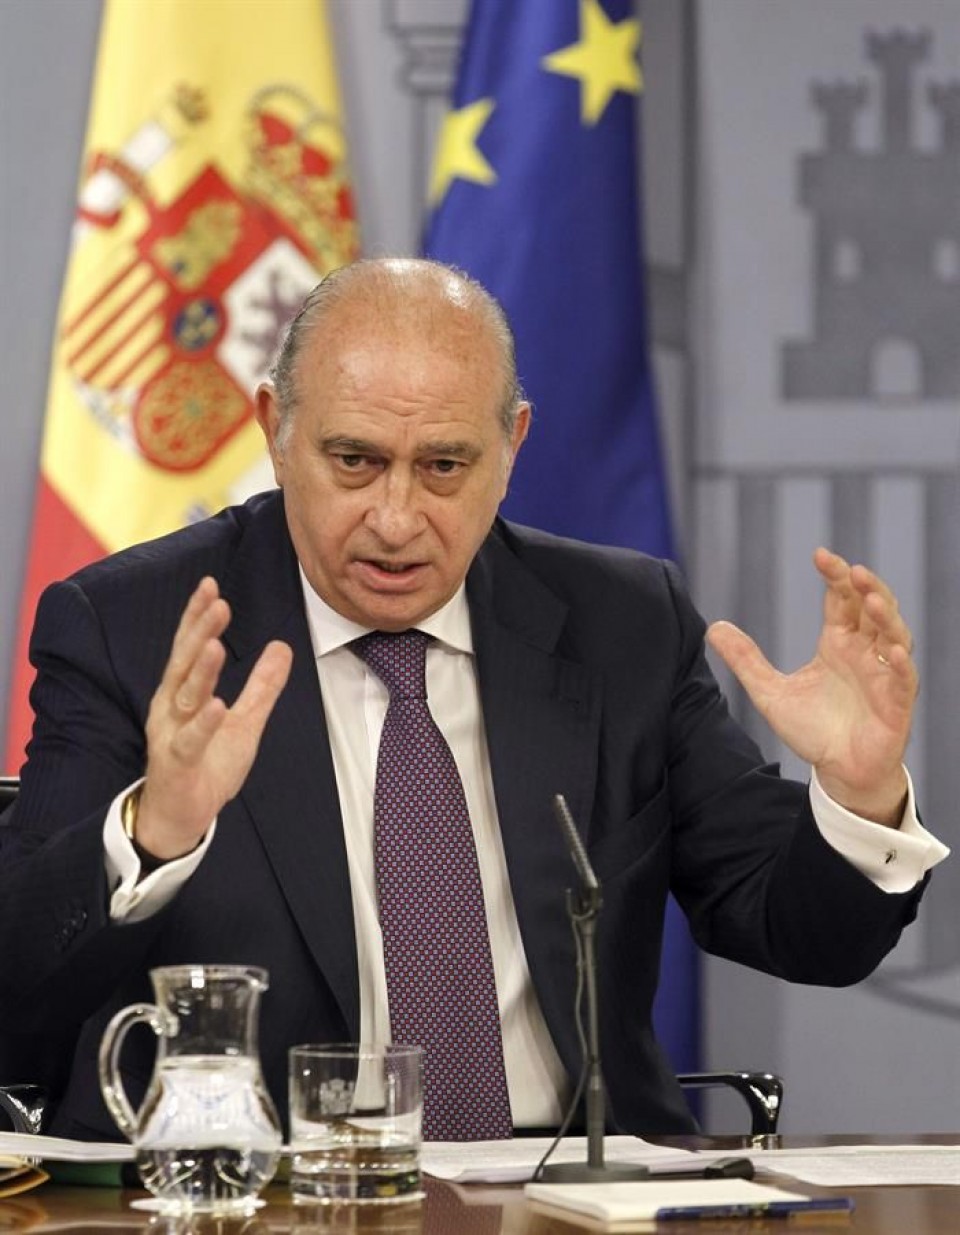 Jorge Fernandez Diaz Espainiako Barne ministroa. Artxiboko irudia: EFE